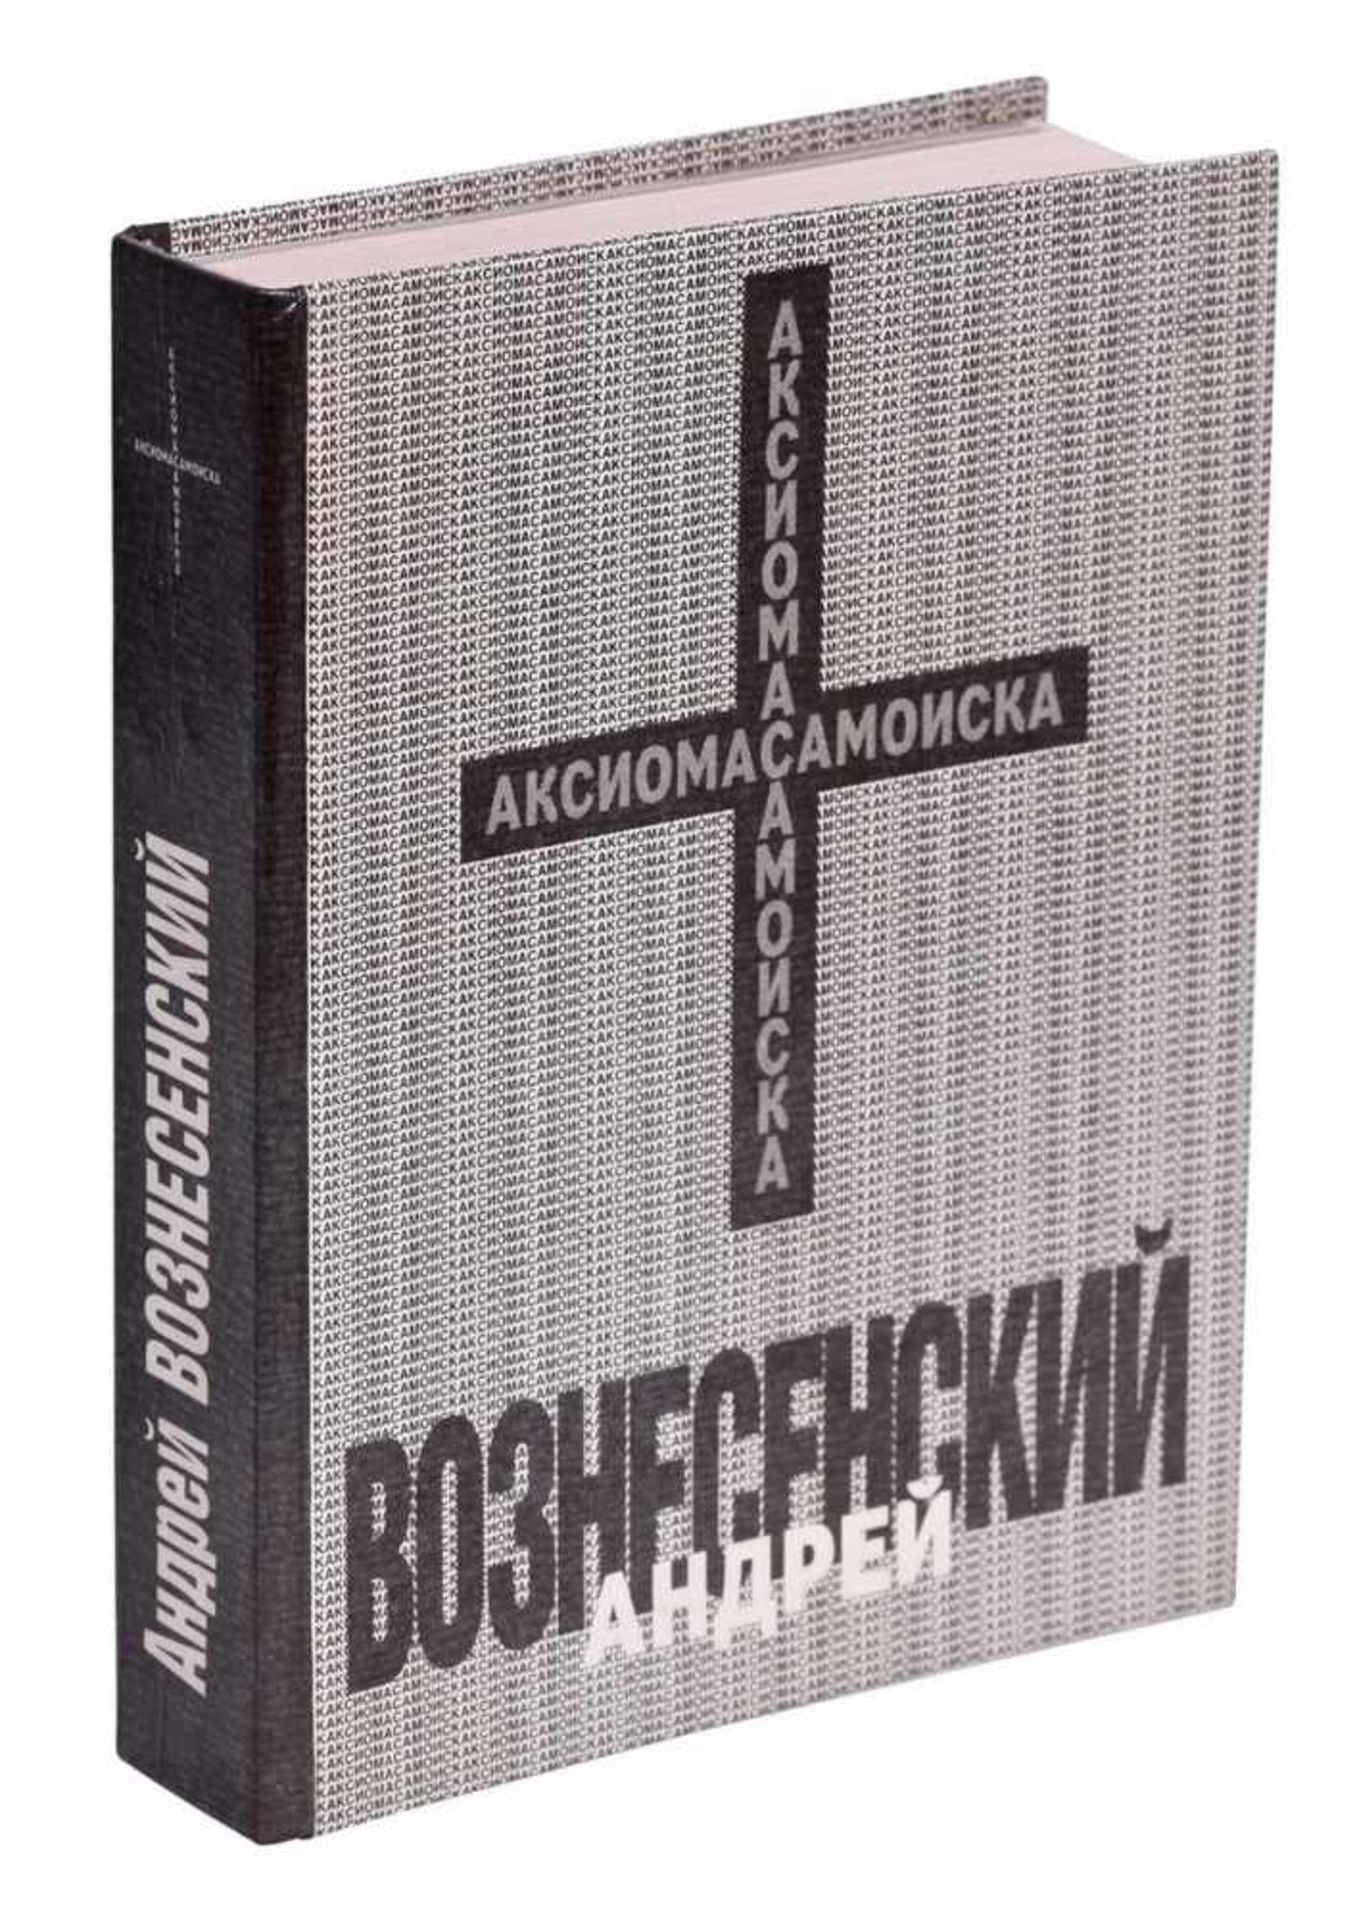 Voznesensky, A. [autograph]. Aksioma samoiska. - Moscow, 1990. - 610 pp., 17,2x13,5 cm.